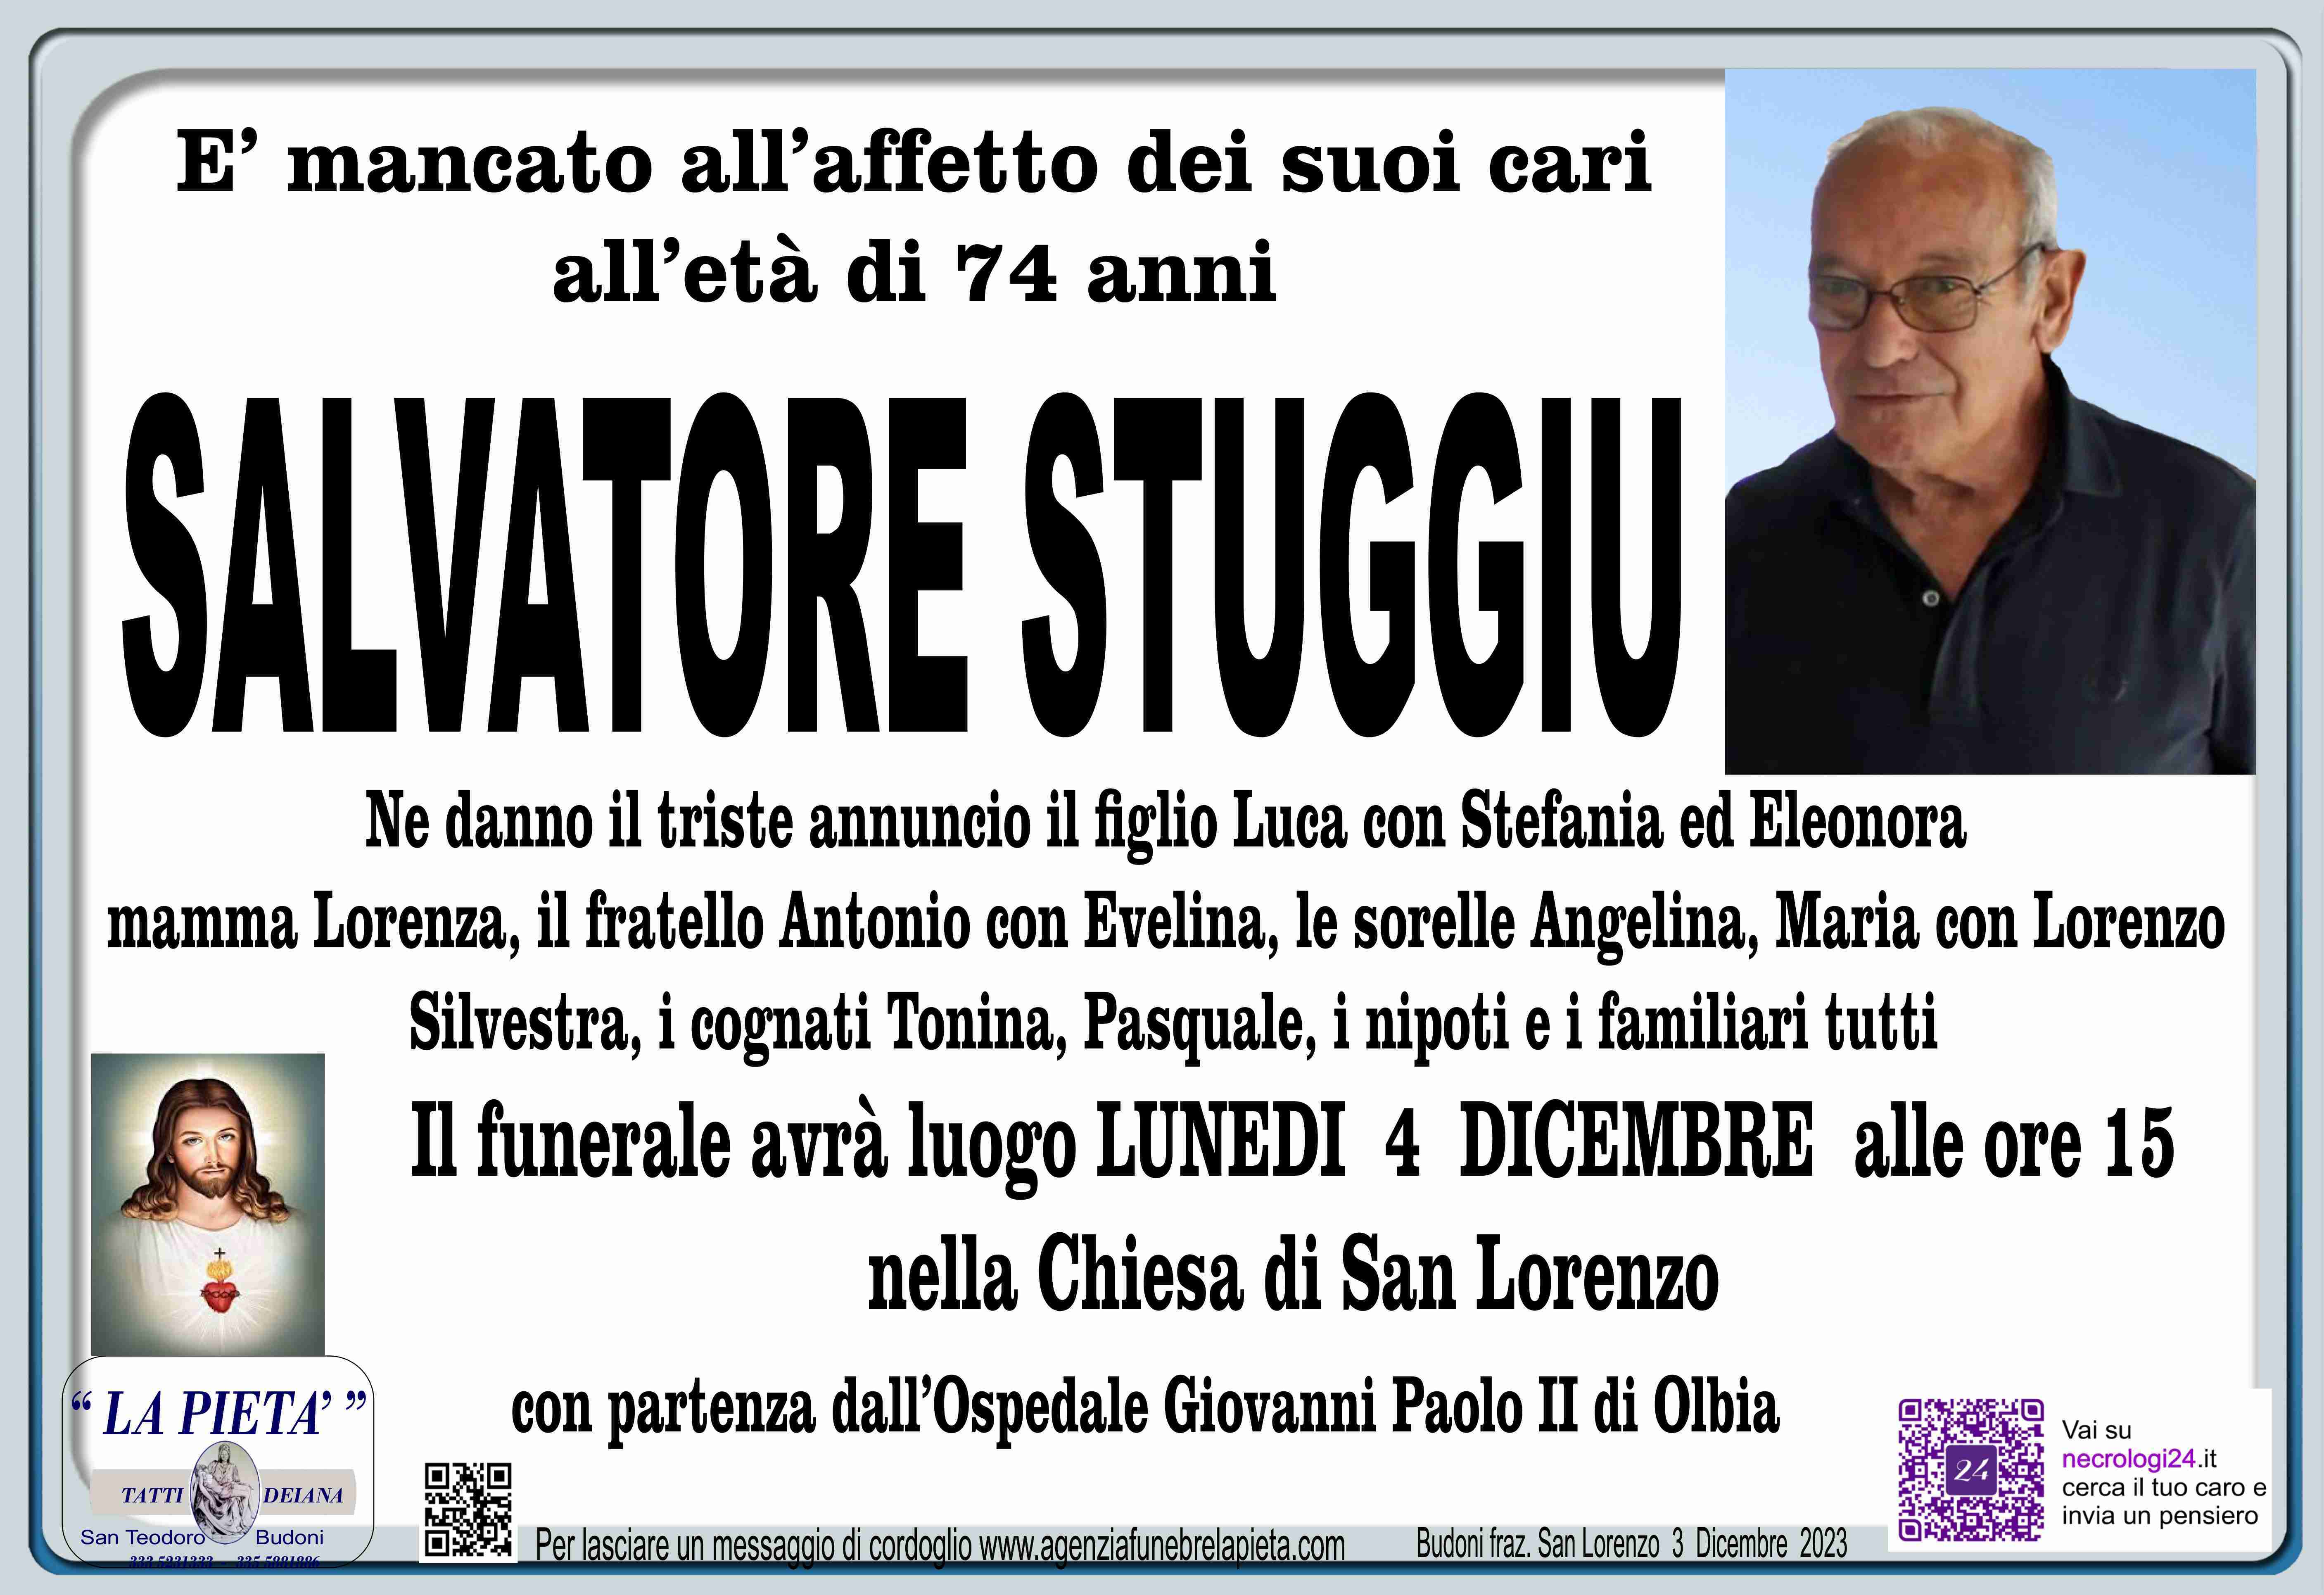 Salvatore Stuggiu